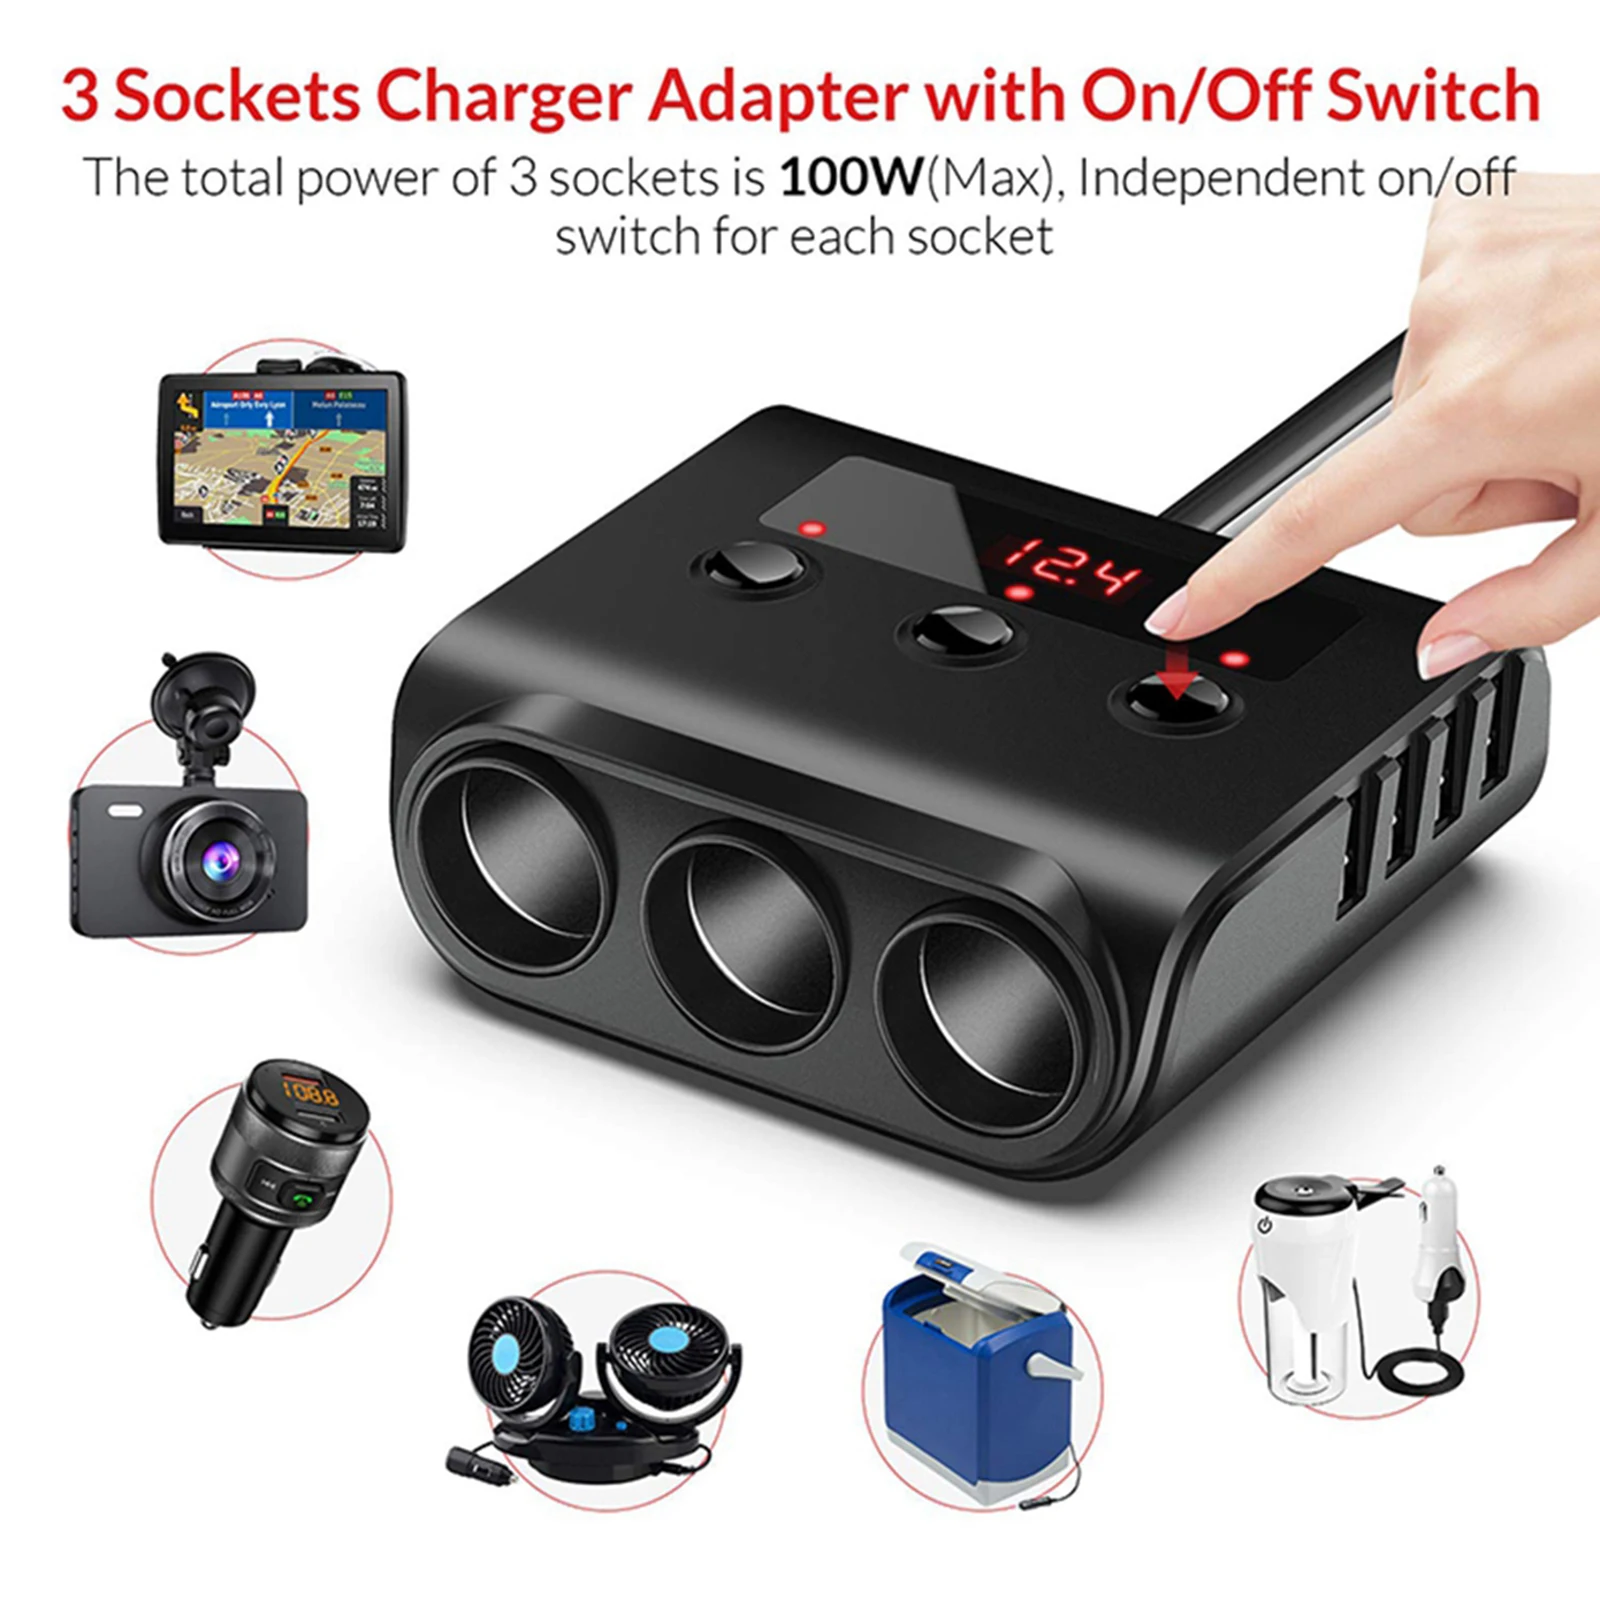 Car Automobile Cigarette Lighter Adapter 12V/24V Power Adaptor LED Voltage Display for GPS Dashcam